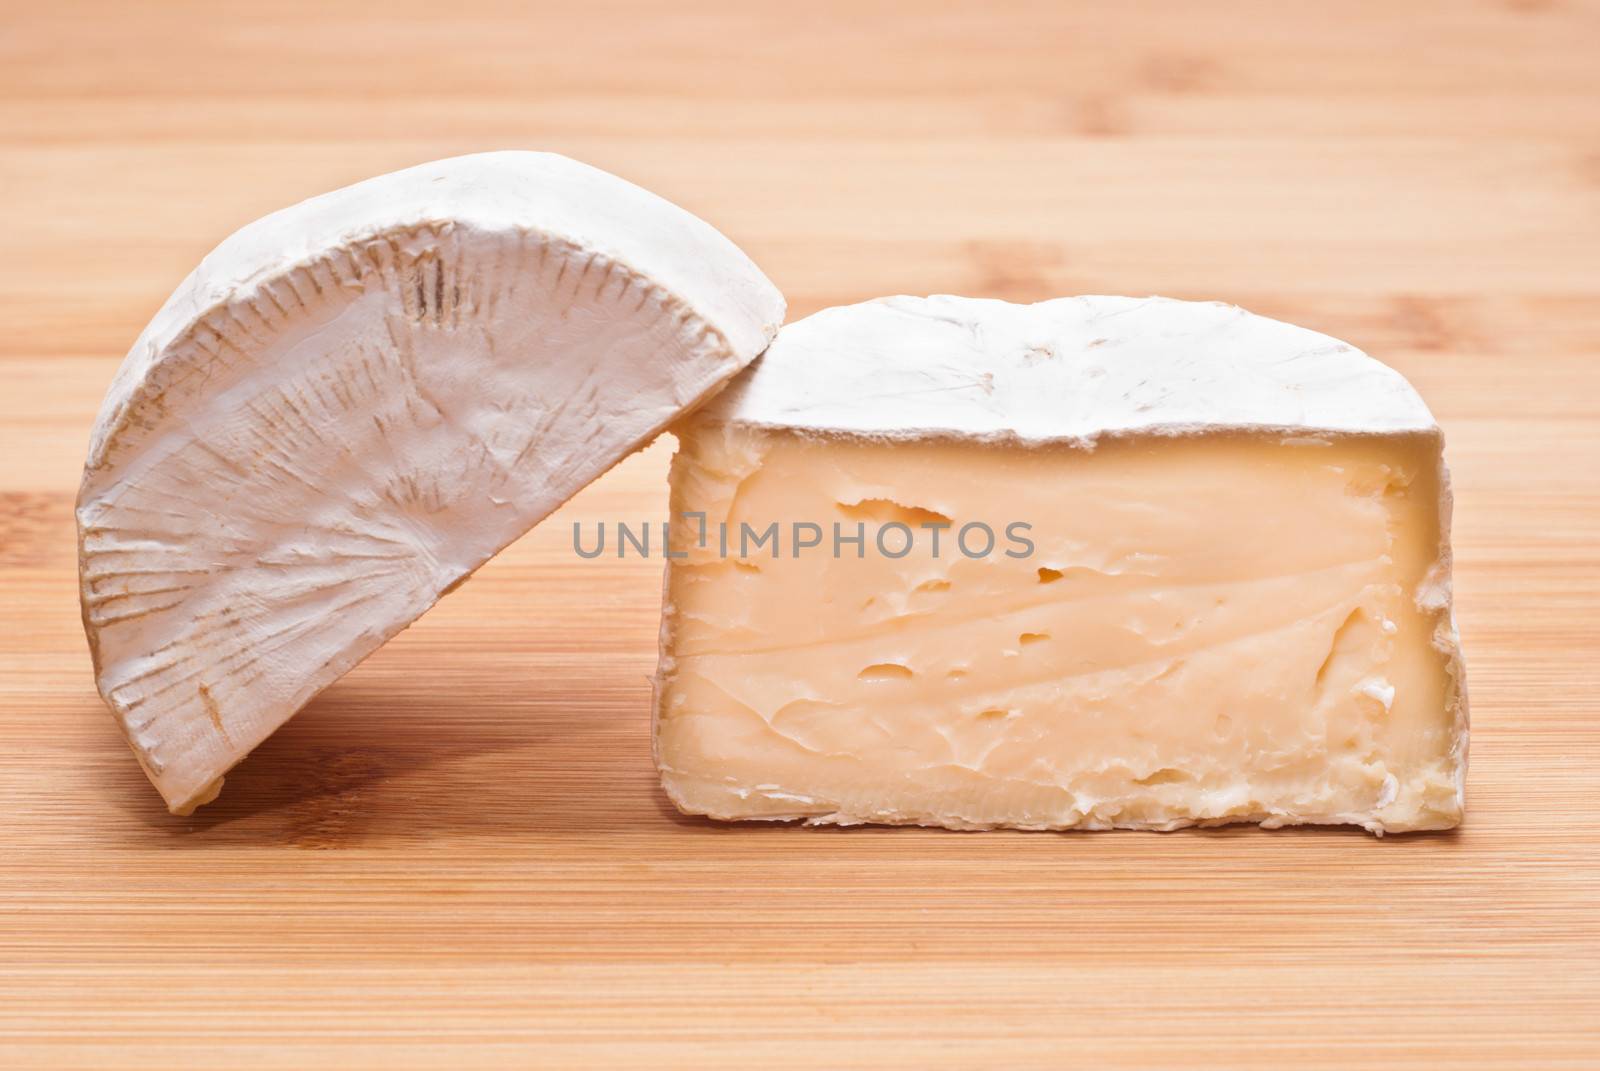 Soft cheese on a wooden board by gandolfocannatella